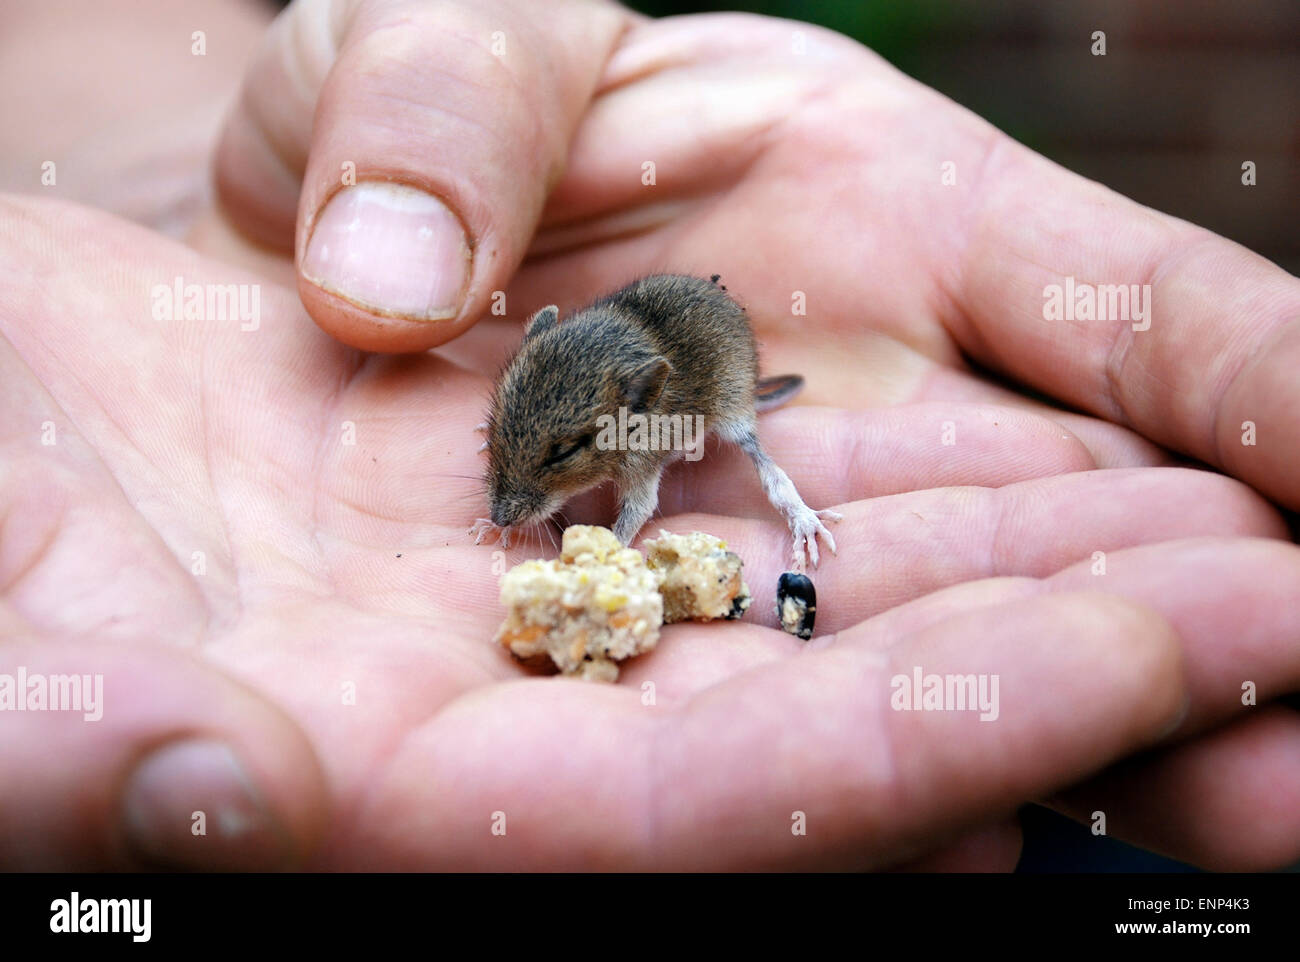 Hände halten ein Baby-Waldmaus, auch bekannt als ein Feld oder Long-tailed Maus Essen Vogelfutter Stockfoto